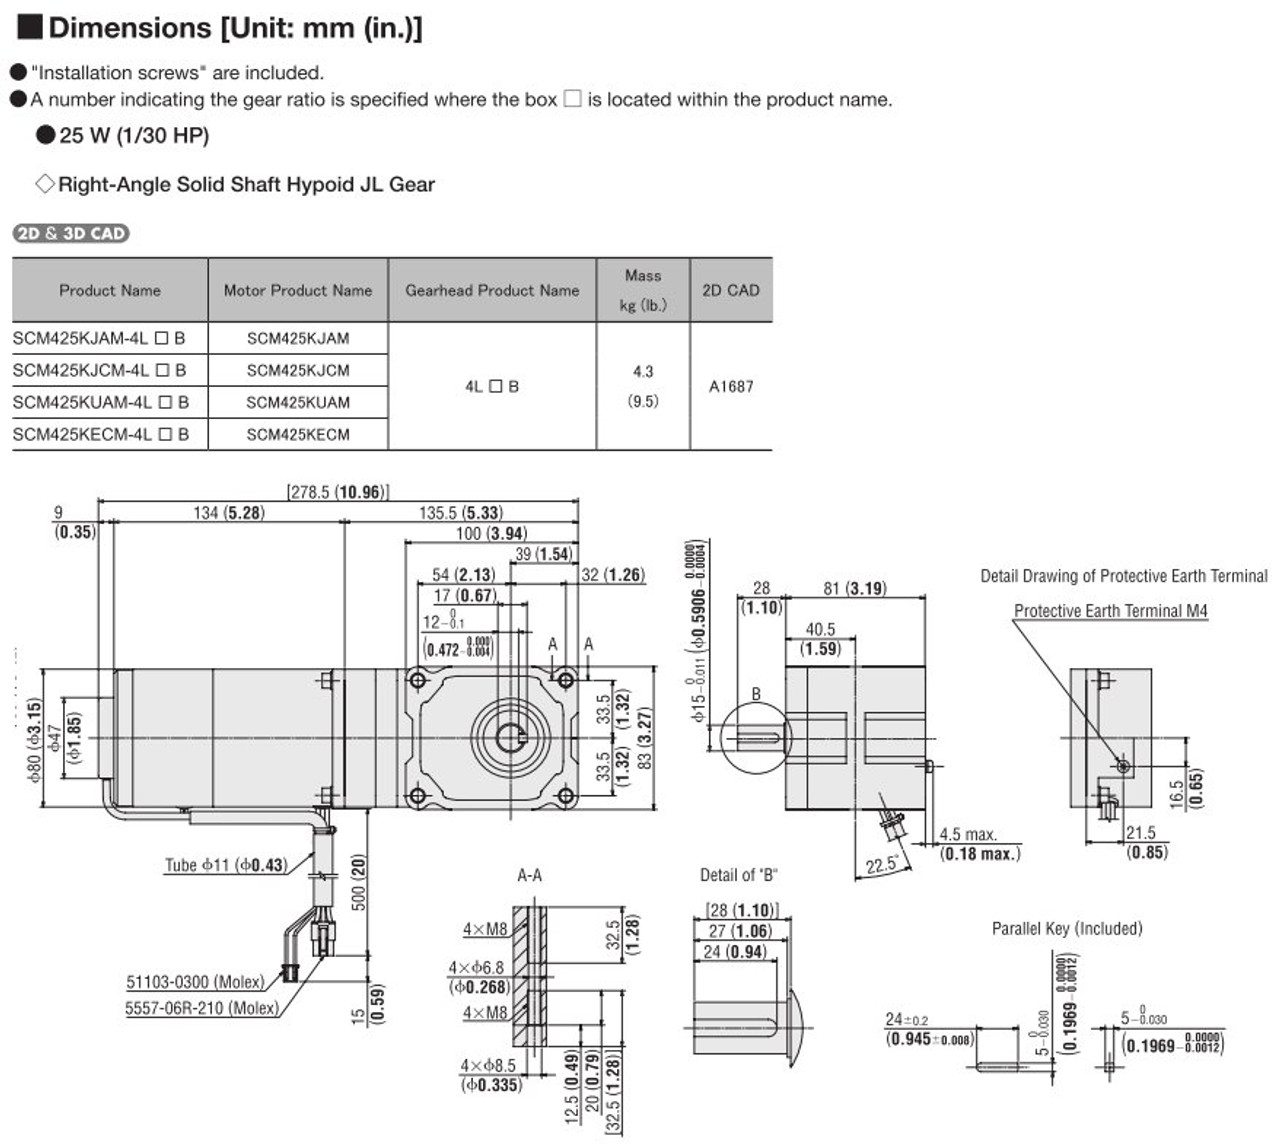 SCM425KECM-4L10B - Dimensions